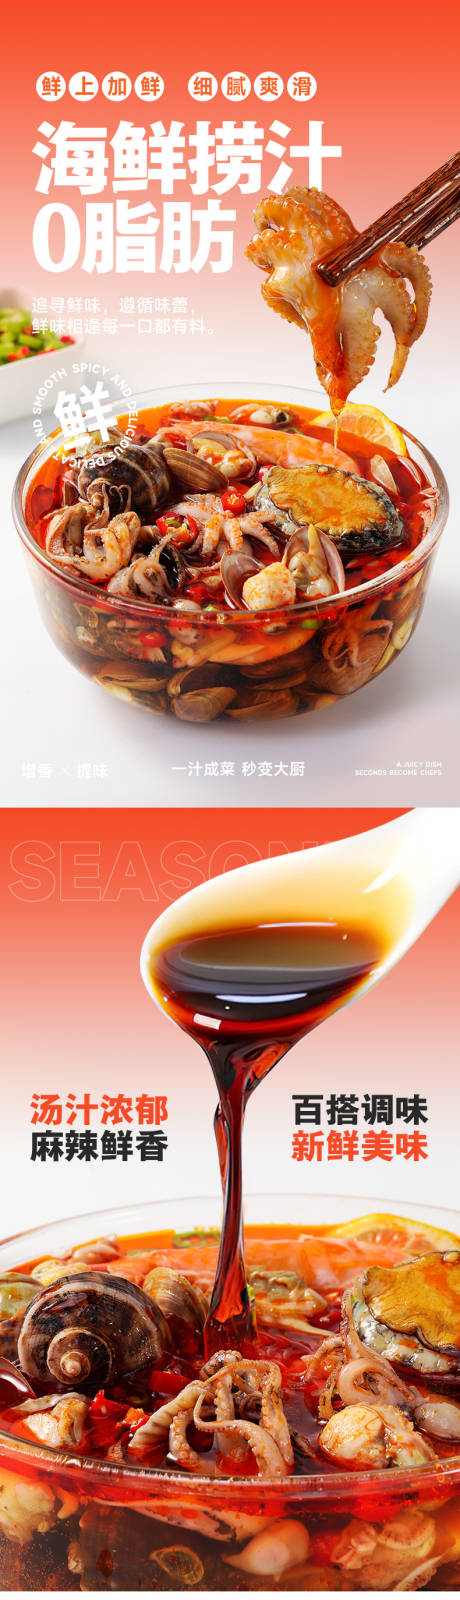 网红美食海鲜捞汁调味料食品详情页